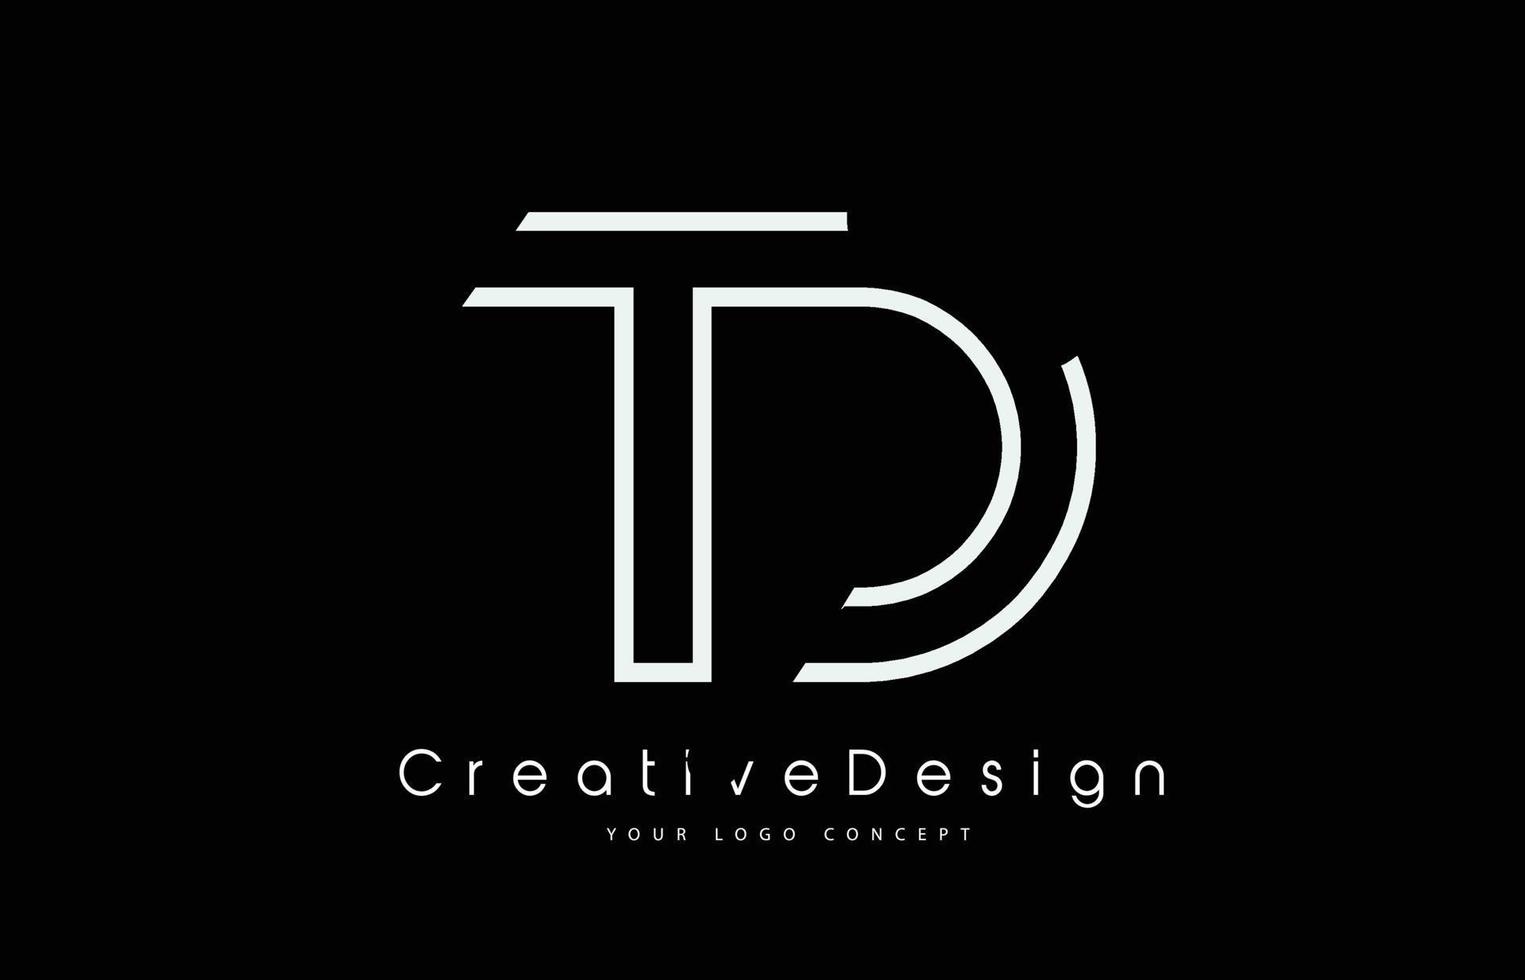 création de logo de lettre td td en couleurs blanches. vecteur